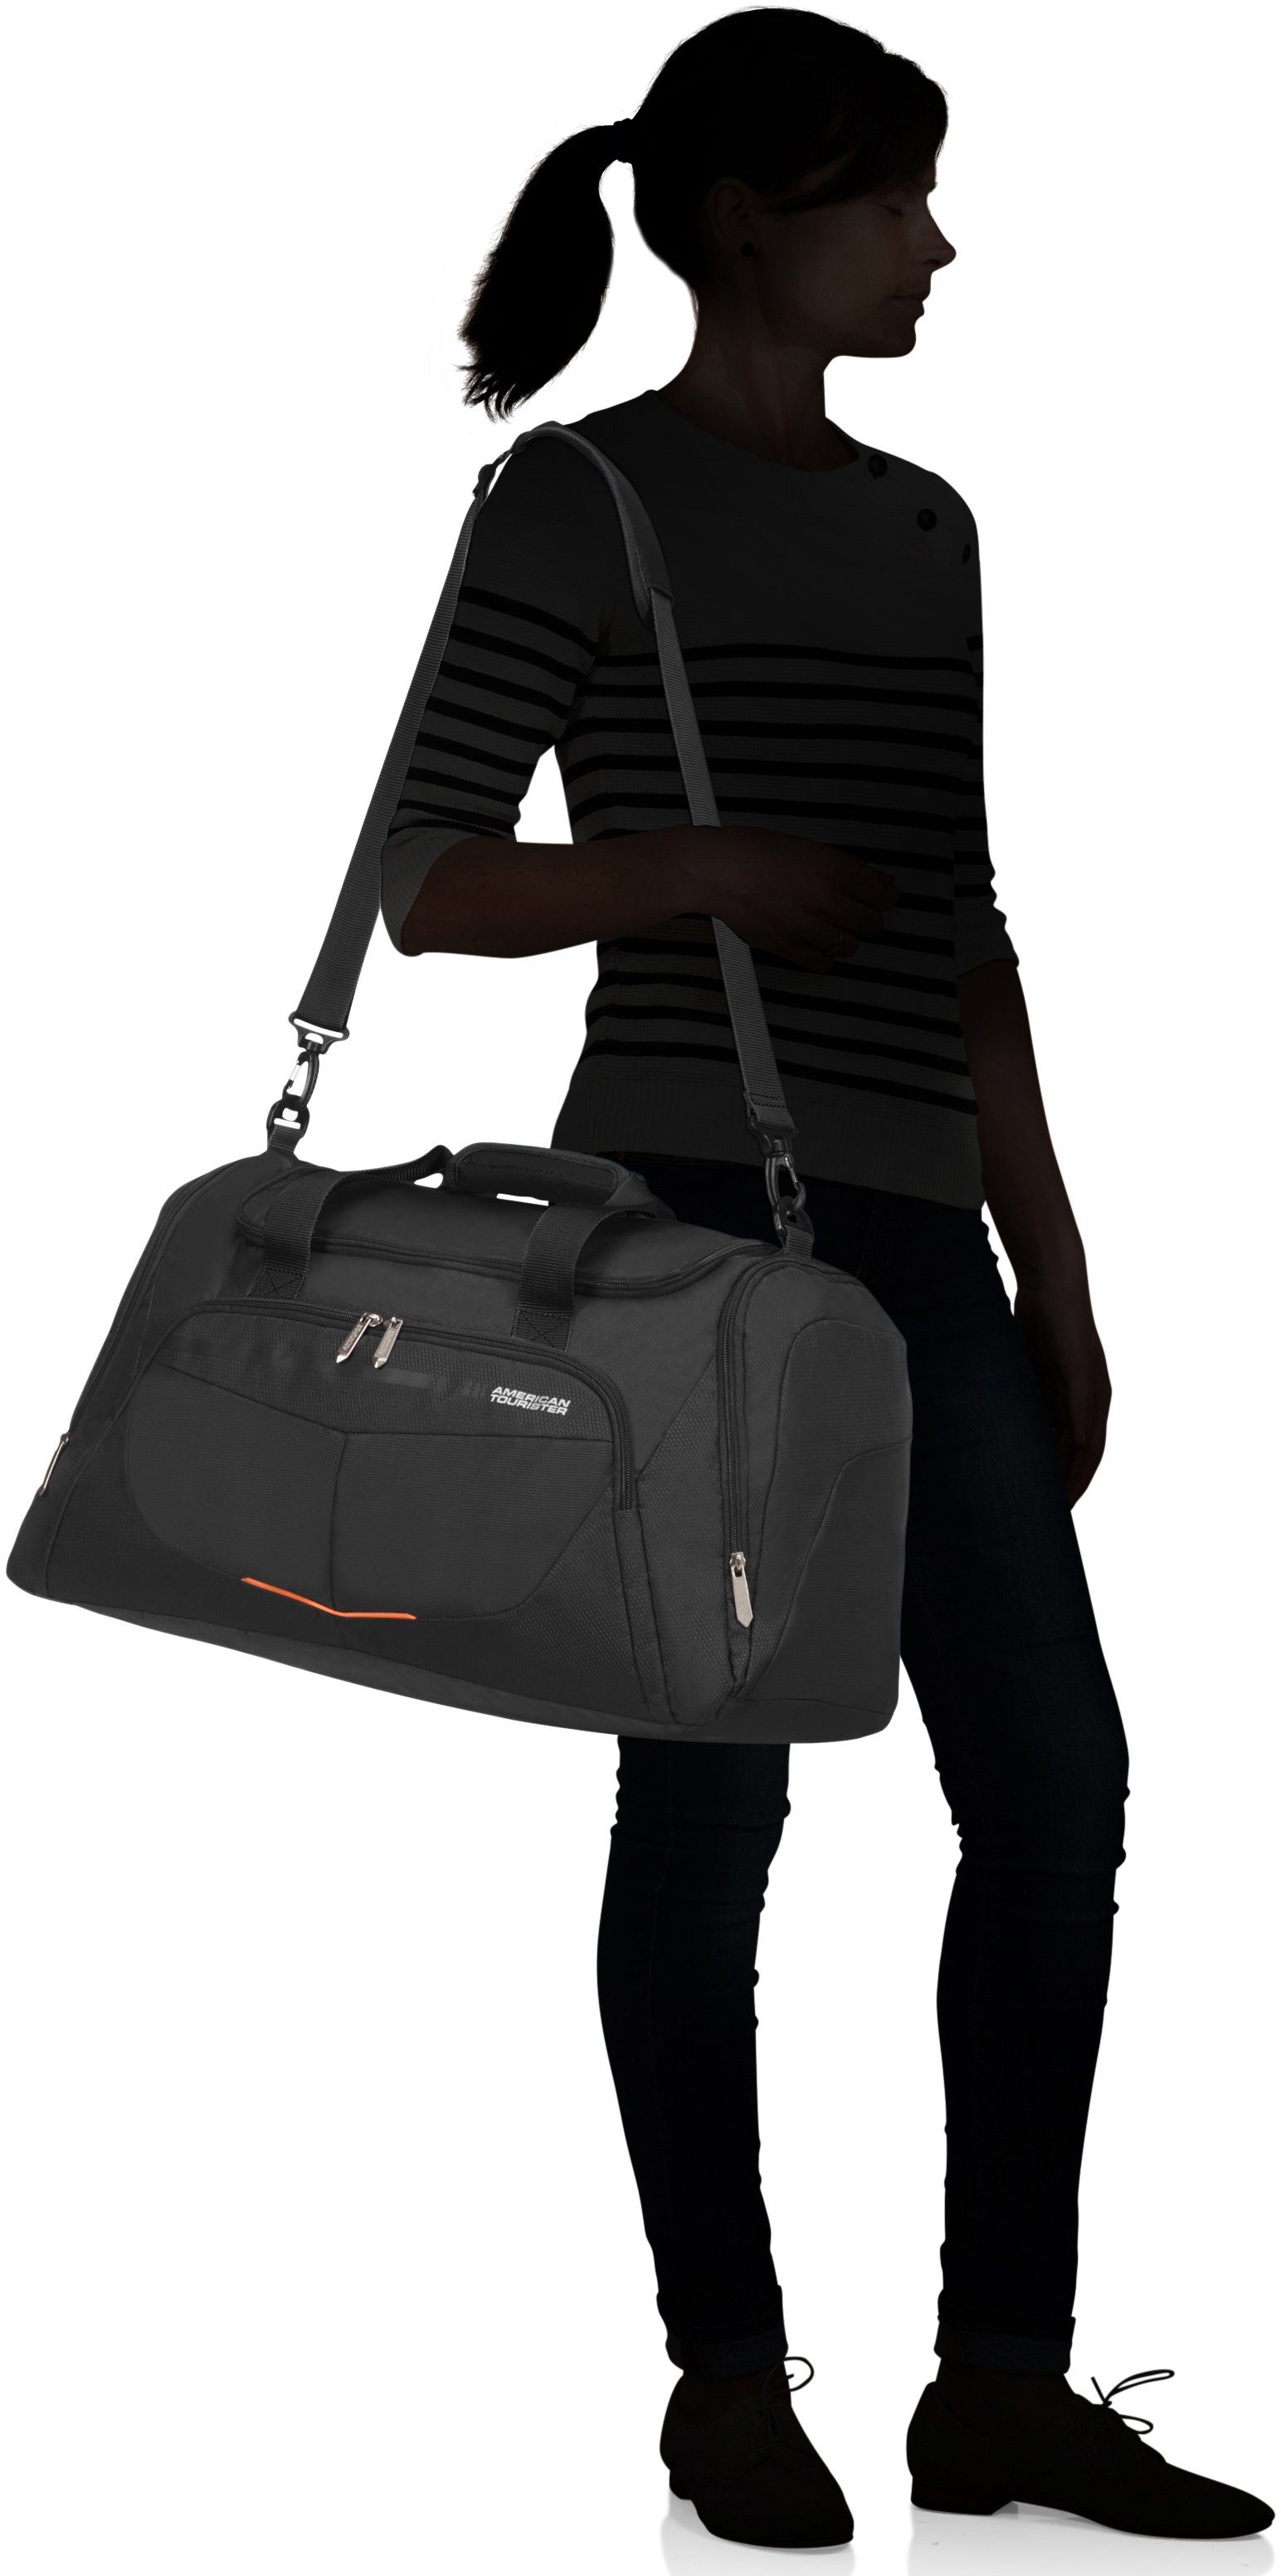 American Tourister® schwarz Reisetasche Trolley-Aufsteck-System mit Summerfunk